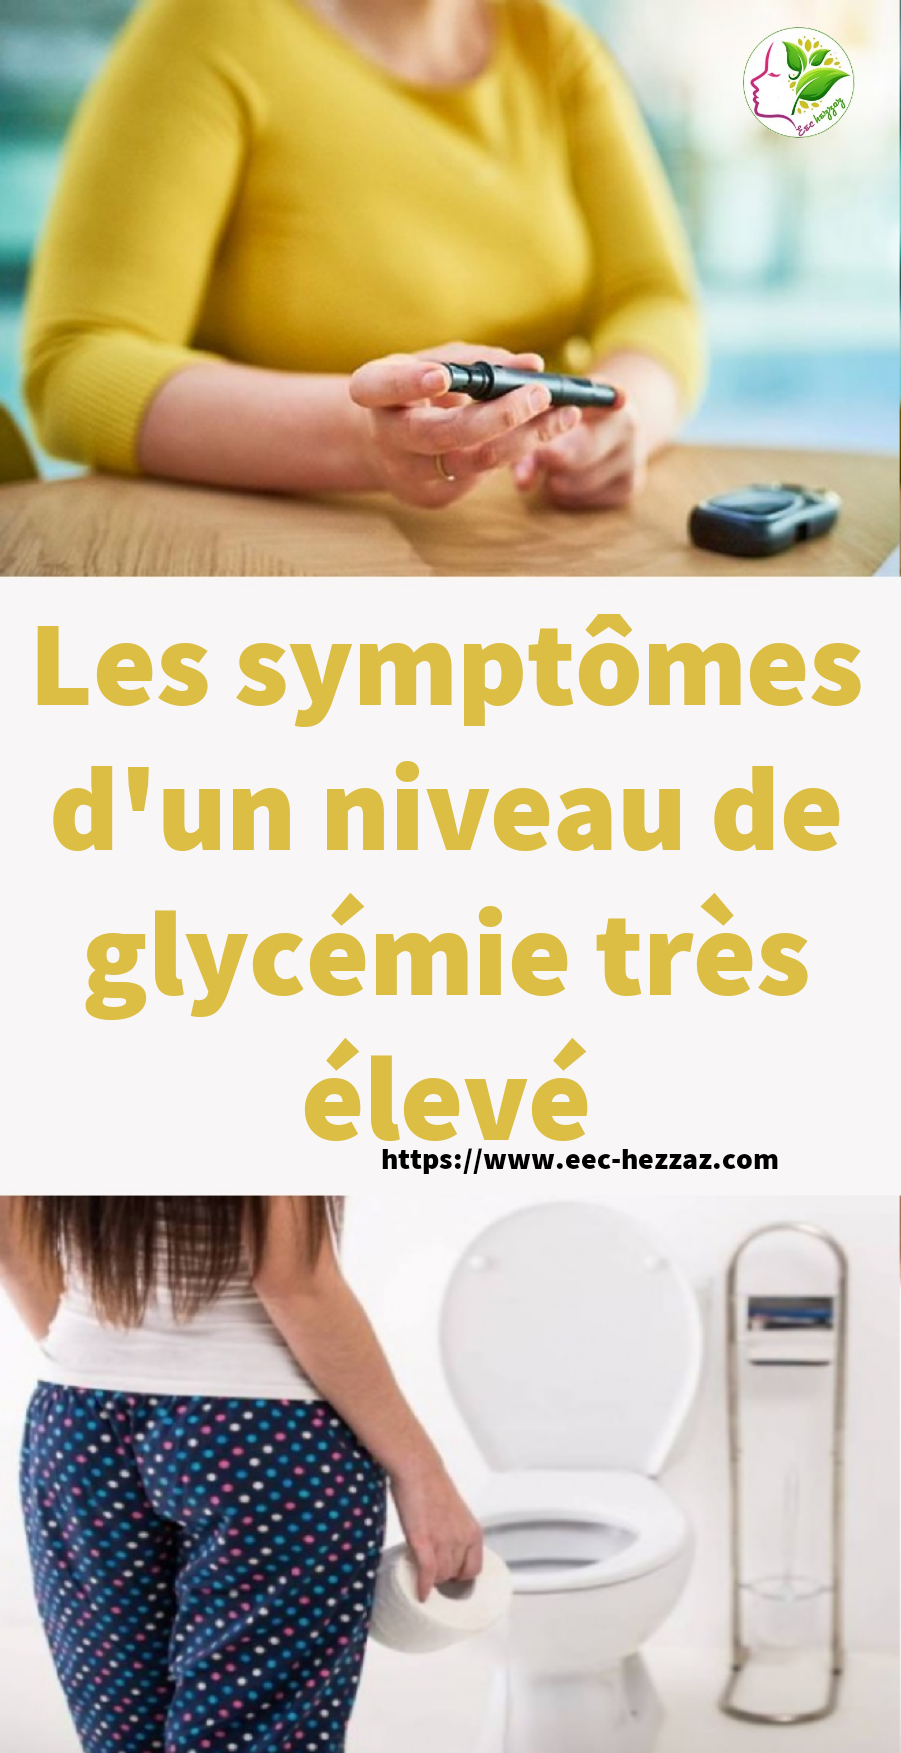 Les symptômes d'un niveau de glycémie très élevé